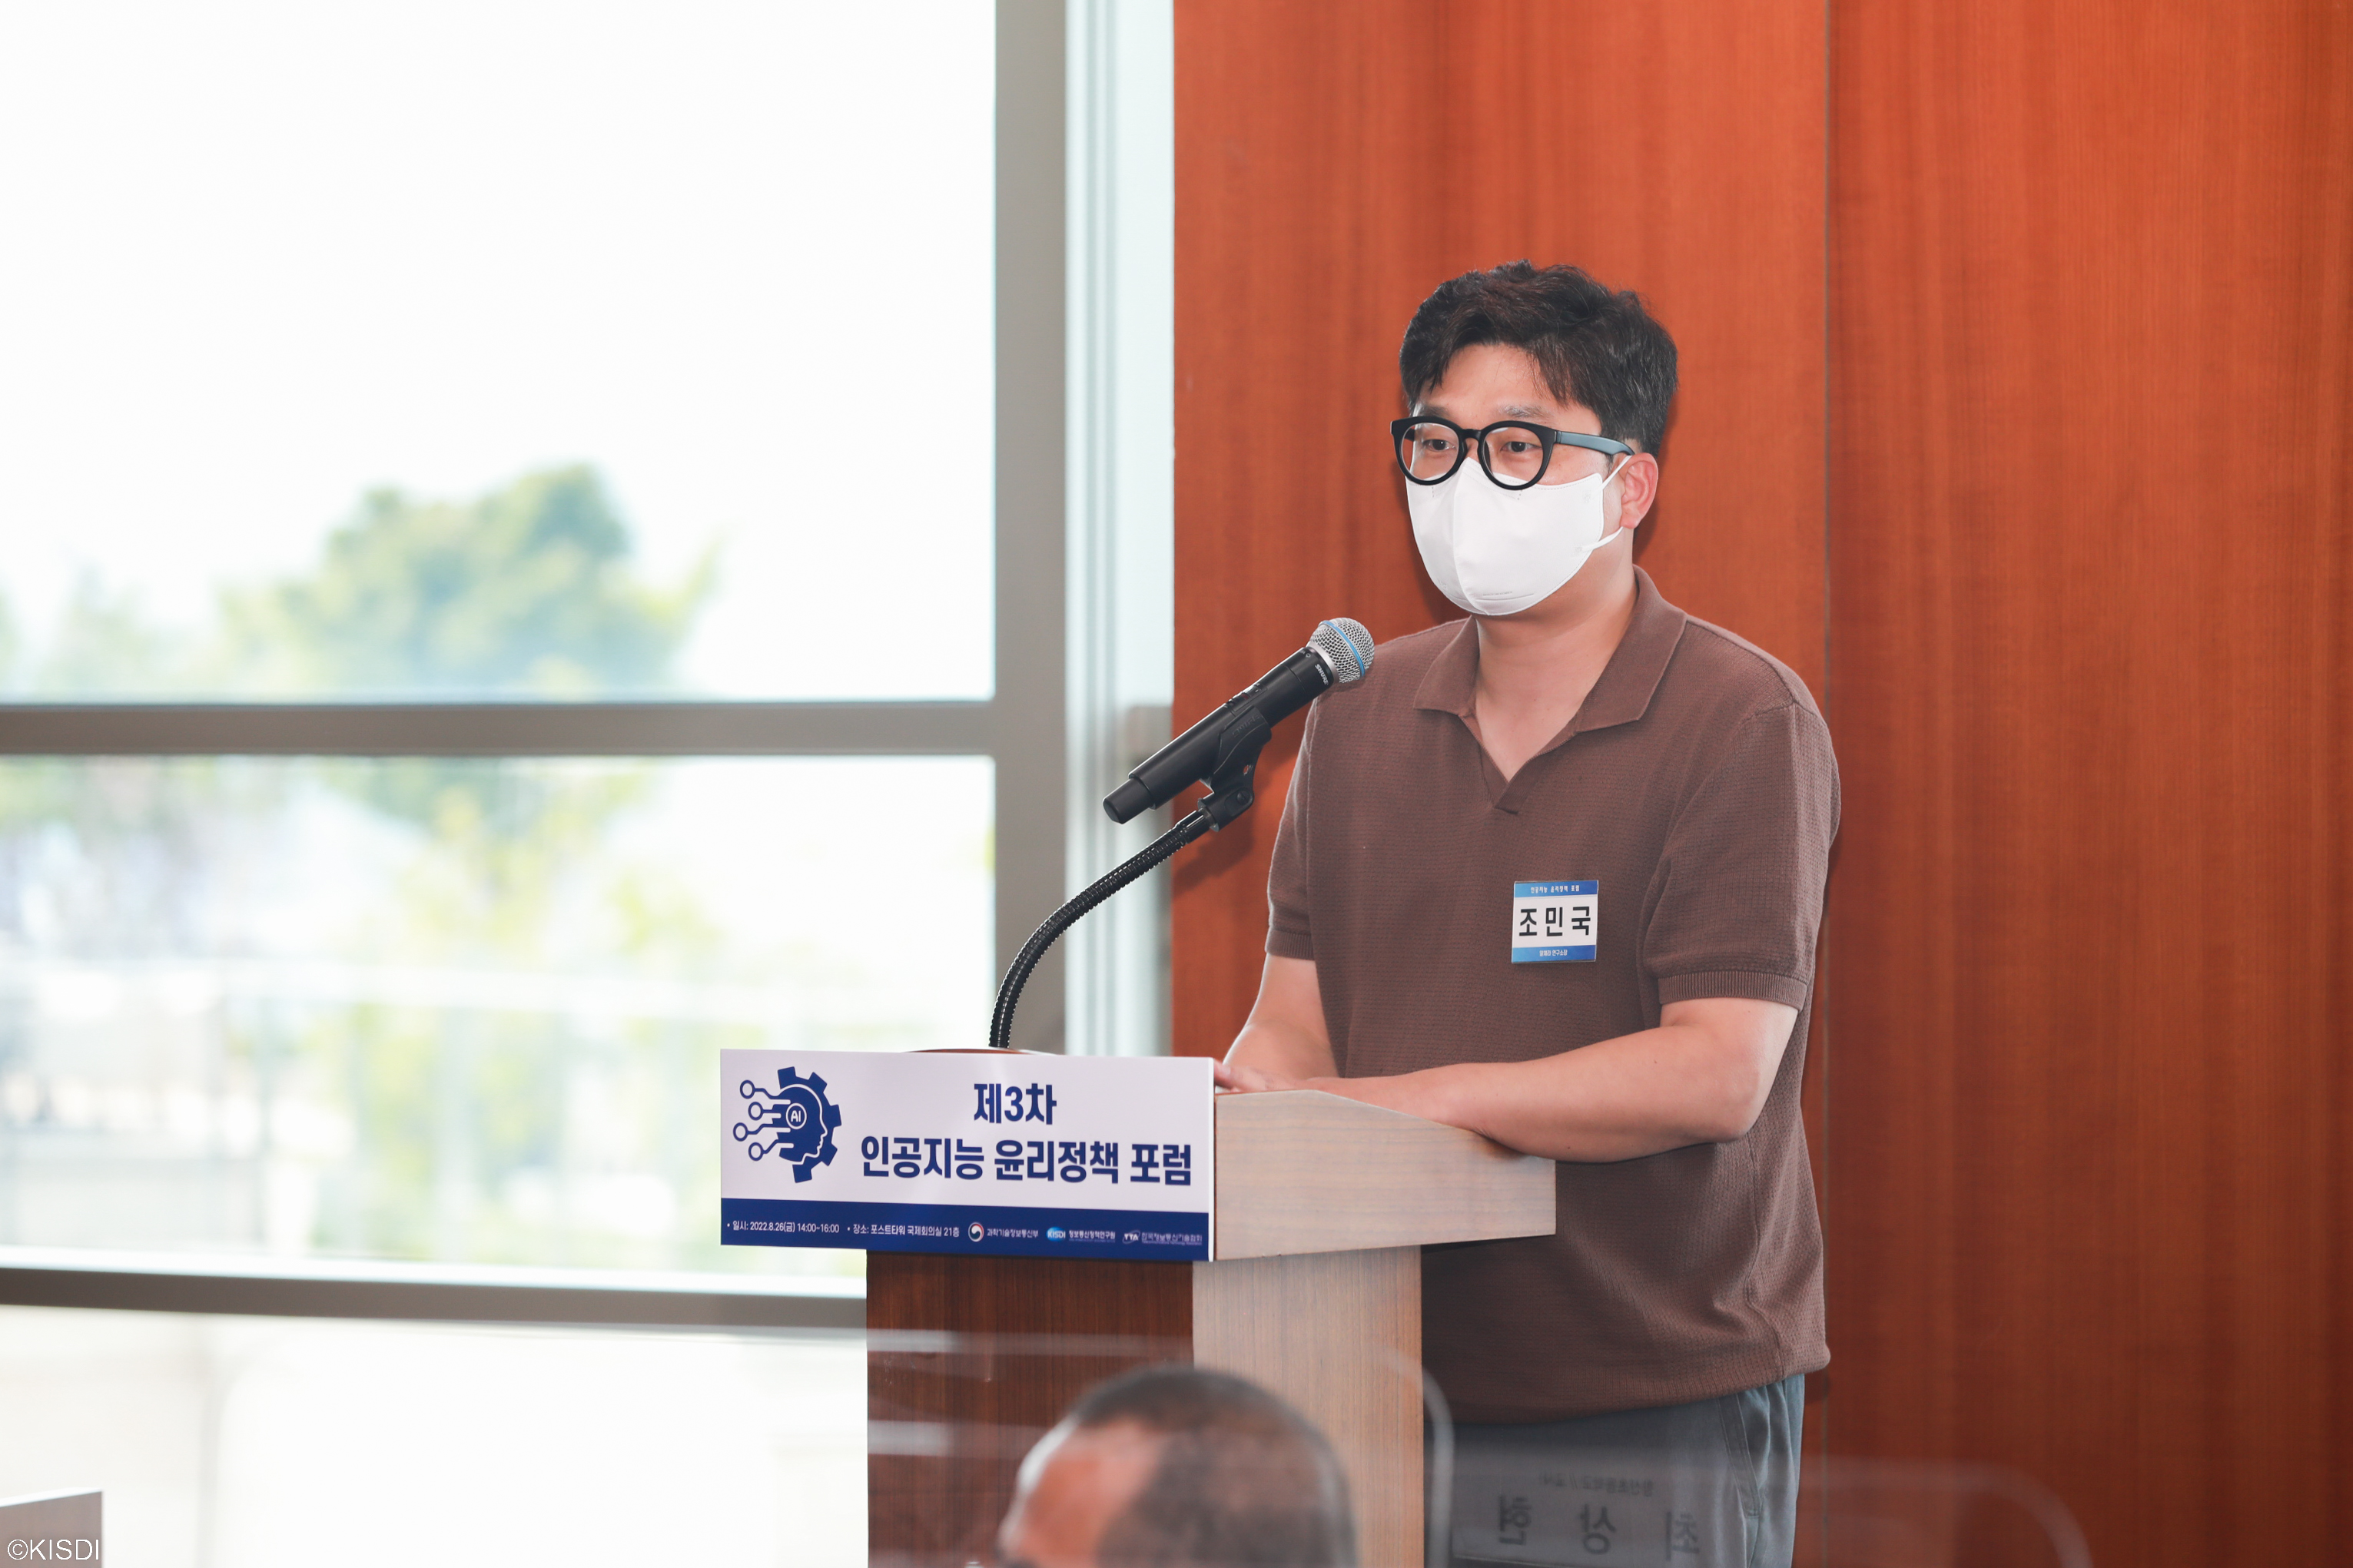 제3차 인공지능 윤리정책 토론회(포럼) 개최